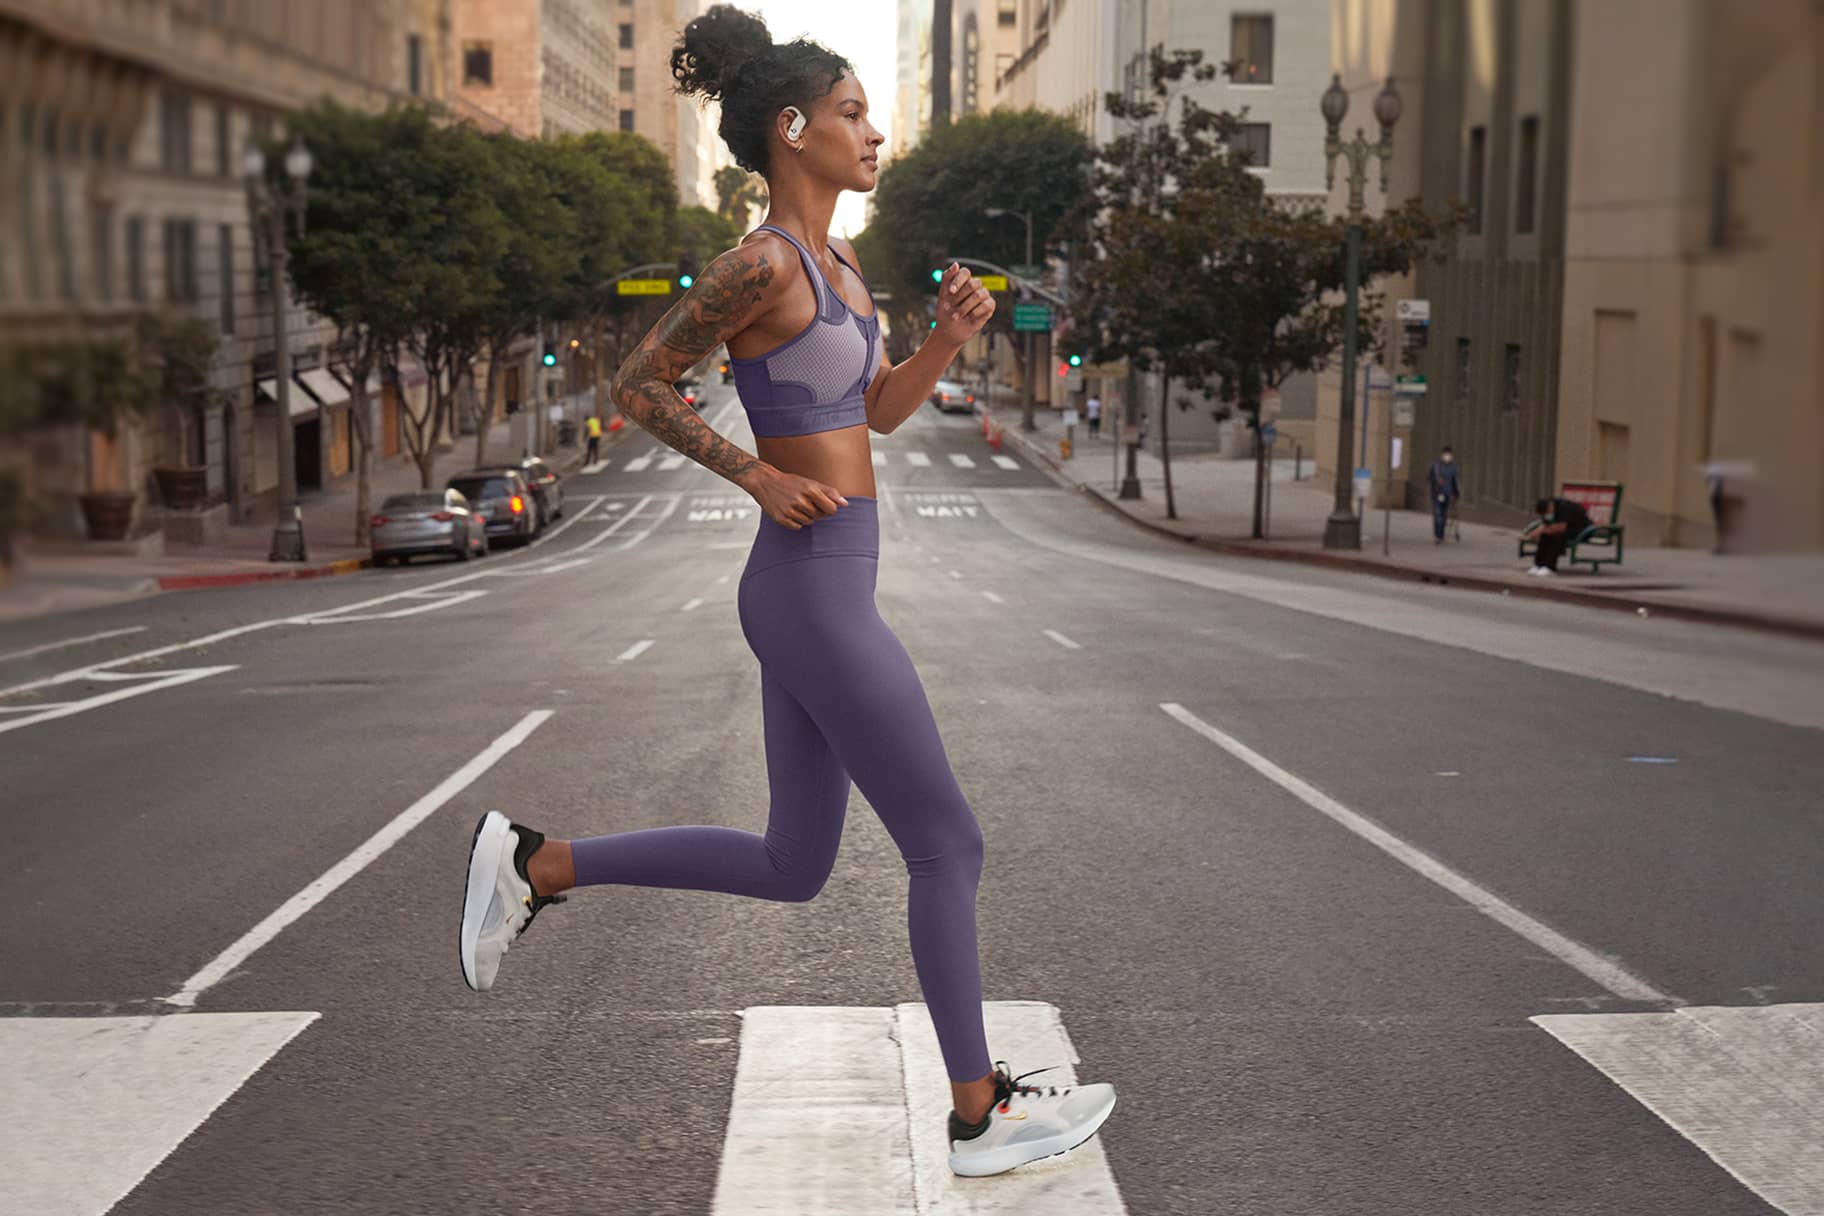 Le scarpe Nike più comode e sostenitive per runner che corrono atterrando sul tallone